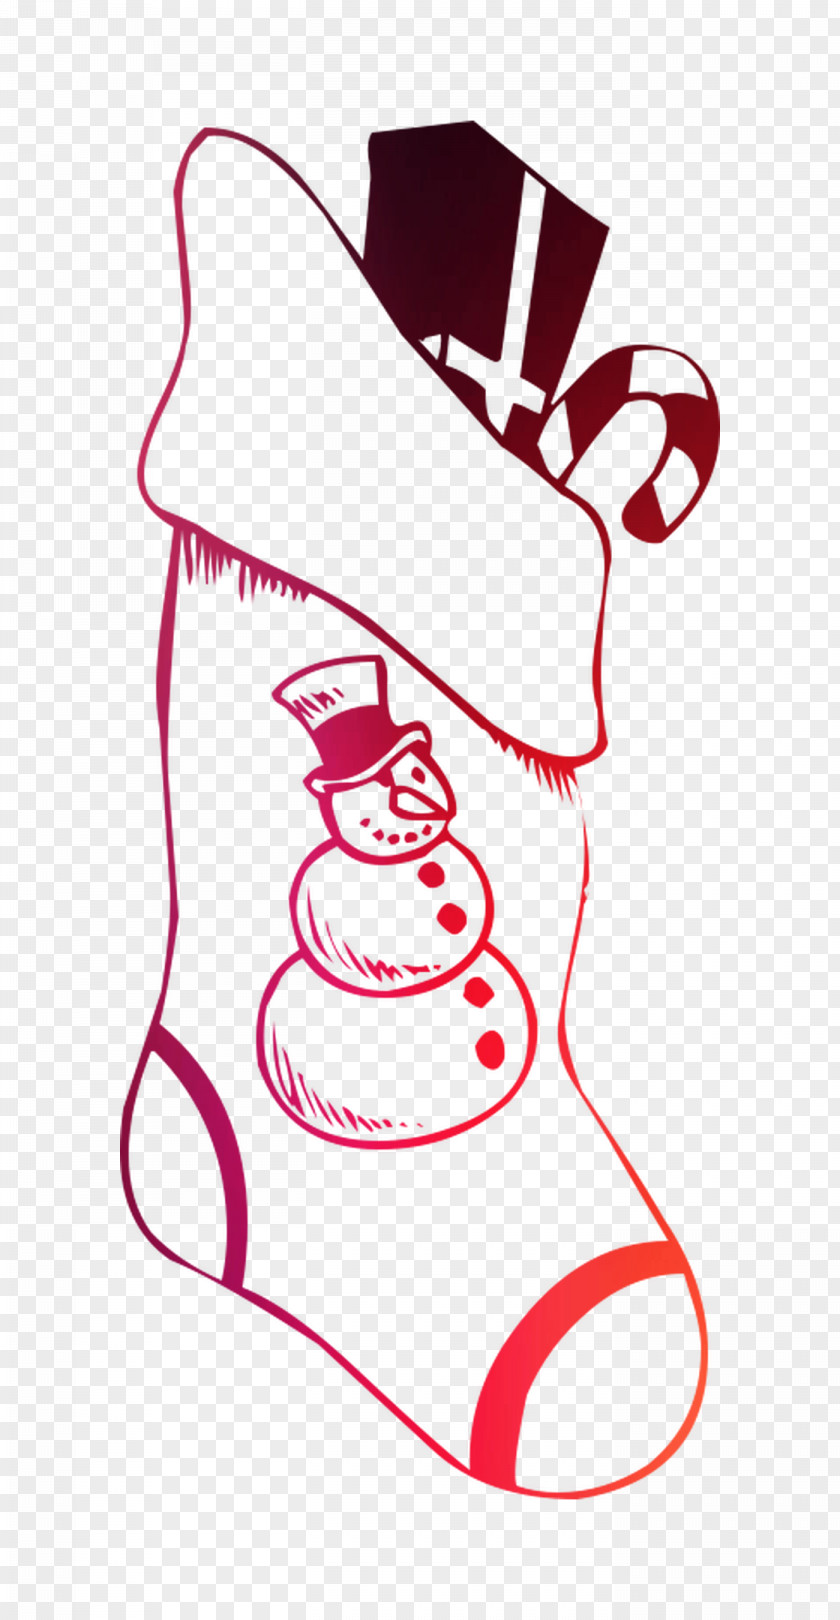 Drawing Christmas Day Illustration Clip Art Santa Claus PNG